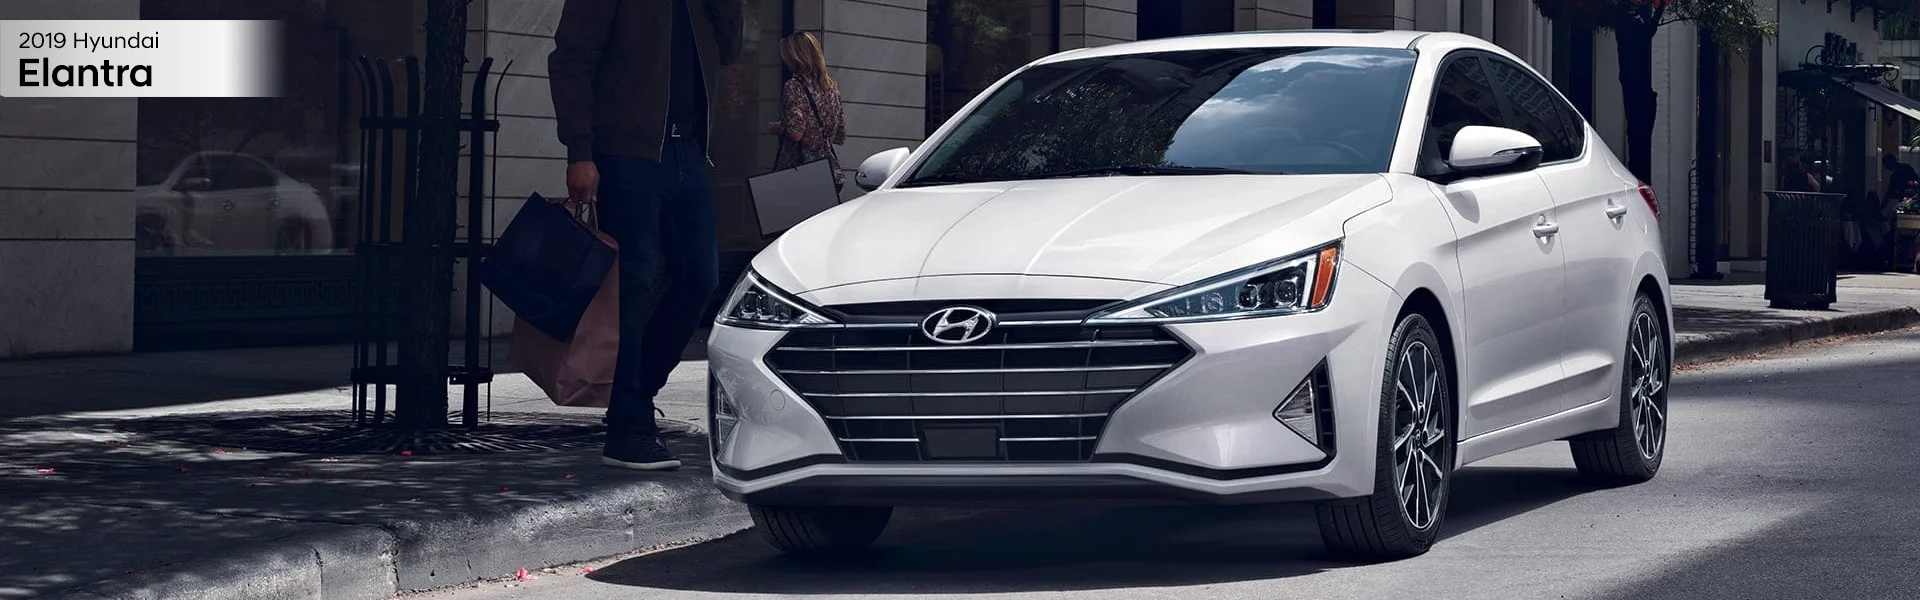 2019 Hyundai Elantra at VA Cars of Tri-Cities in Hopewell, VA